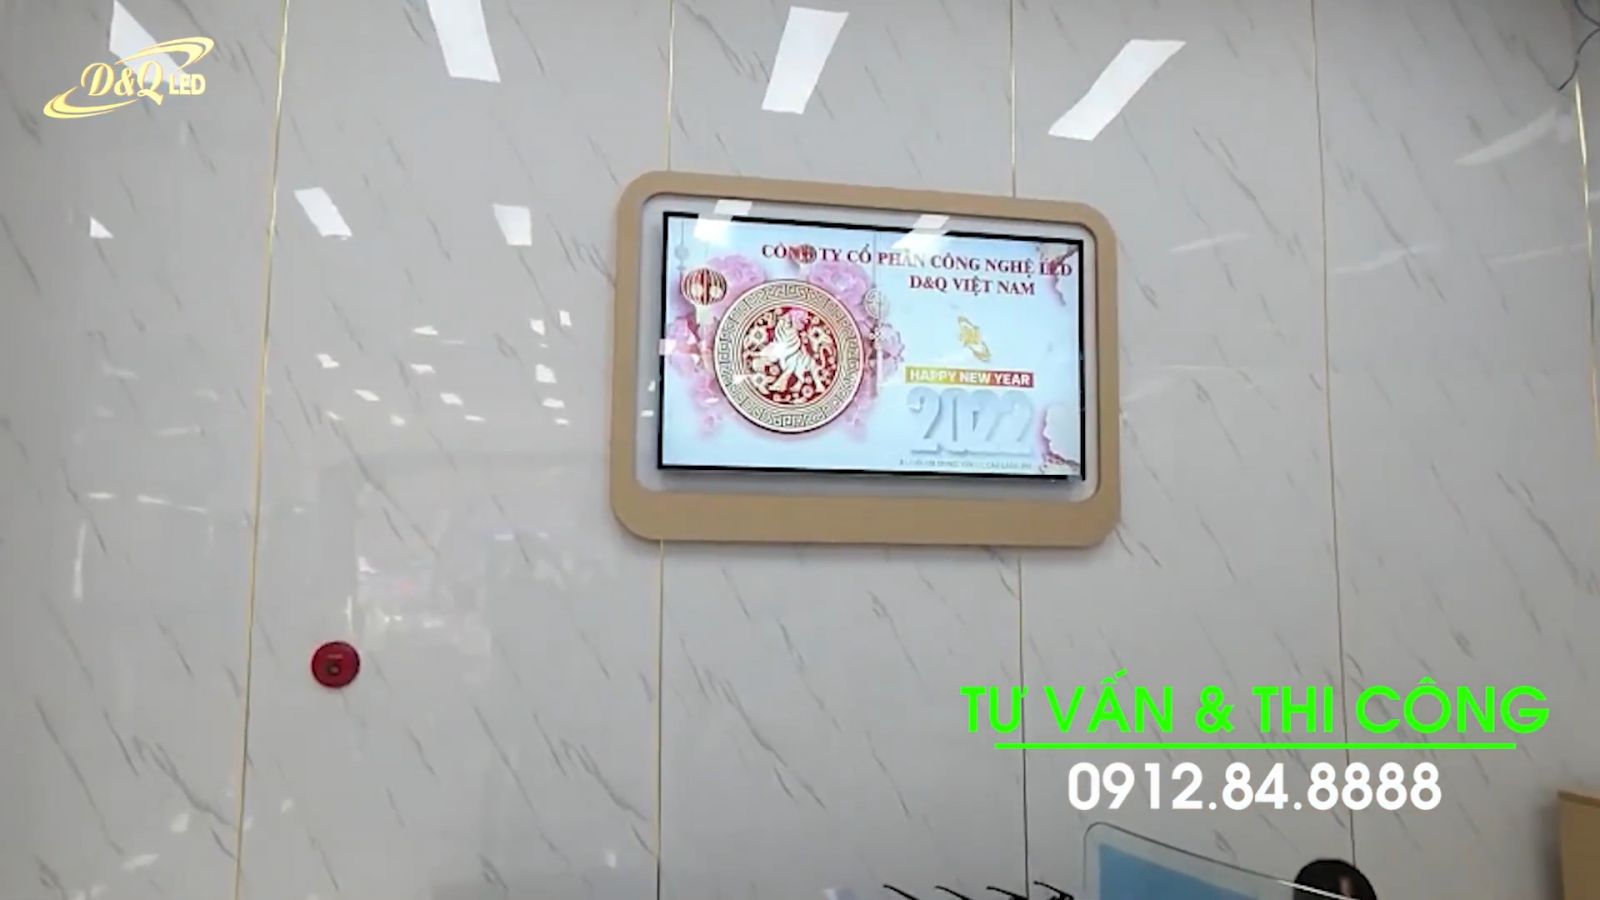 D&Q VietNam Lắp đặt 3 LCD 65 inch treo tường cho BIDV chi nhánh An Dương Vương - TP. HCM